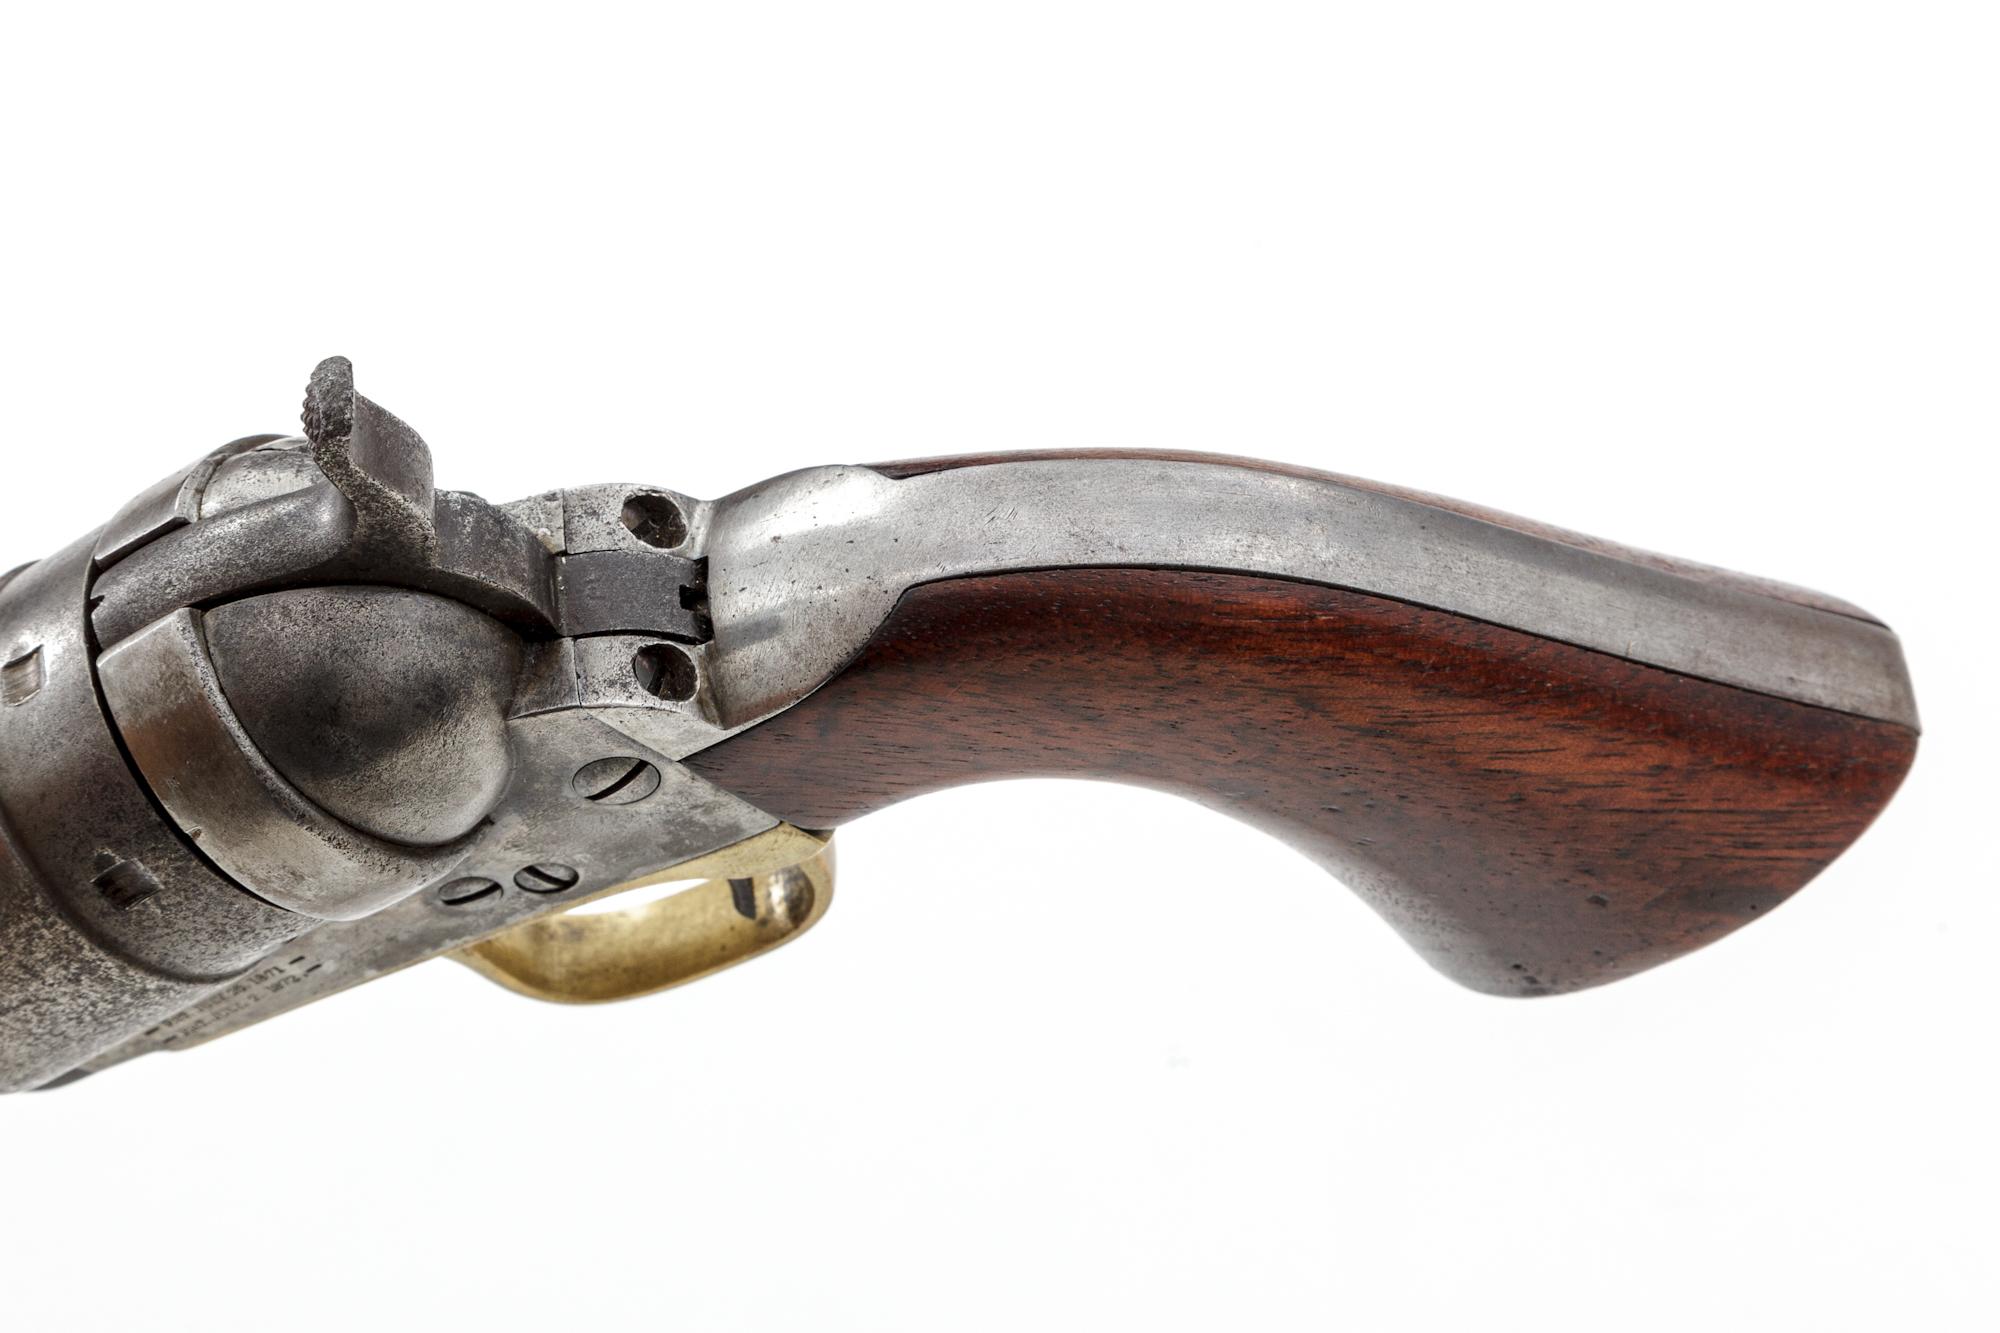 Antique Colt Transition or 2nd Model Richards Conversion Revolver